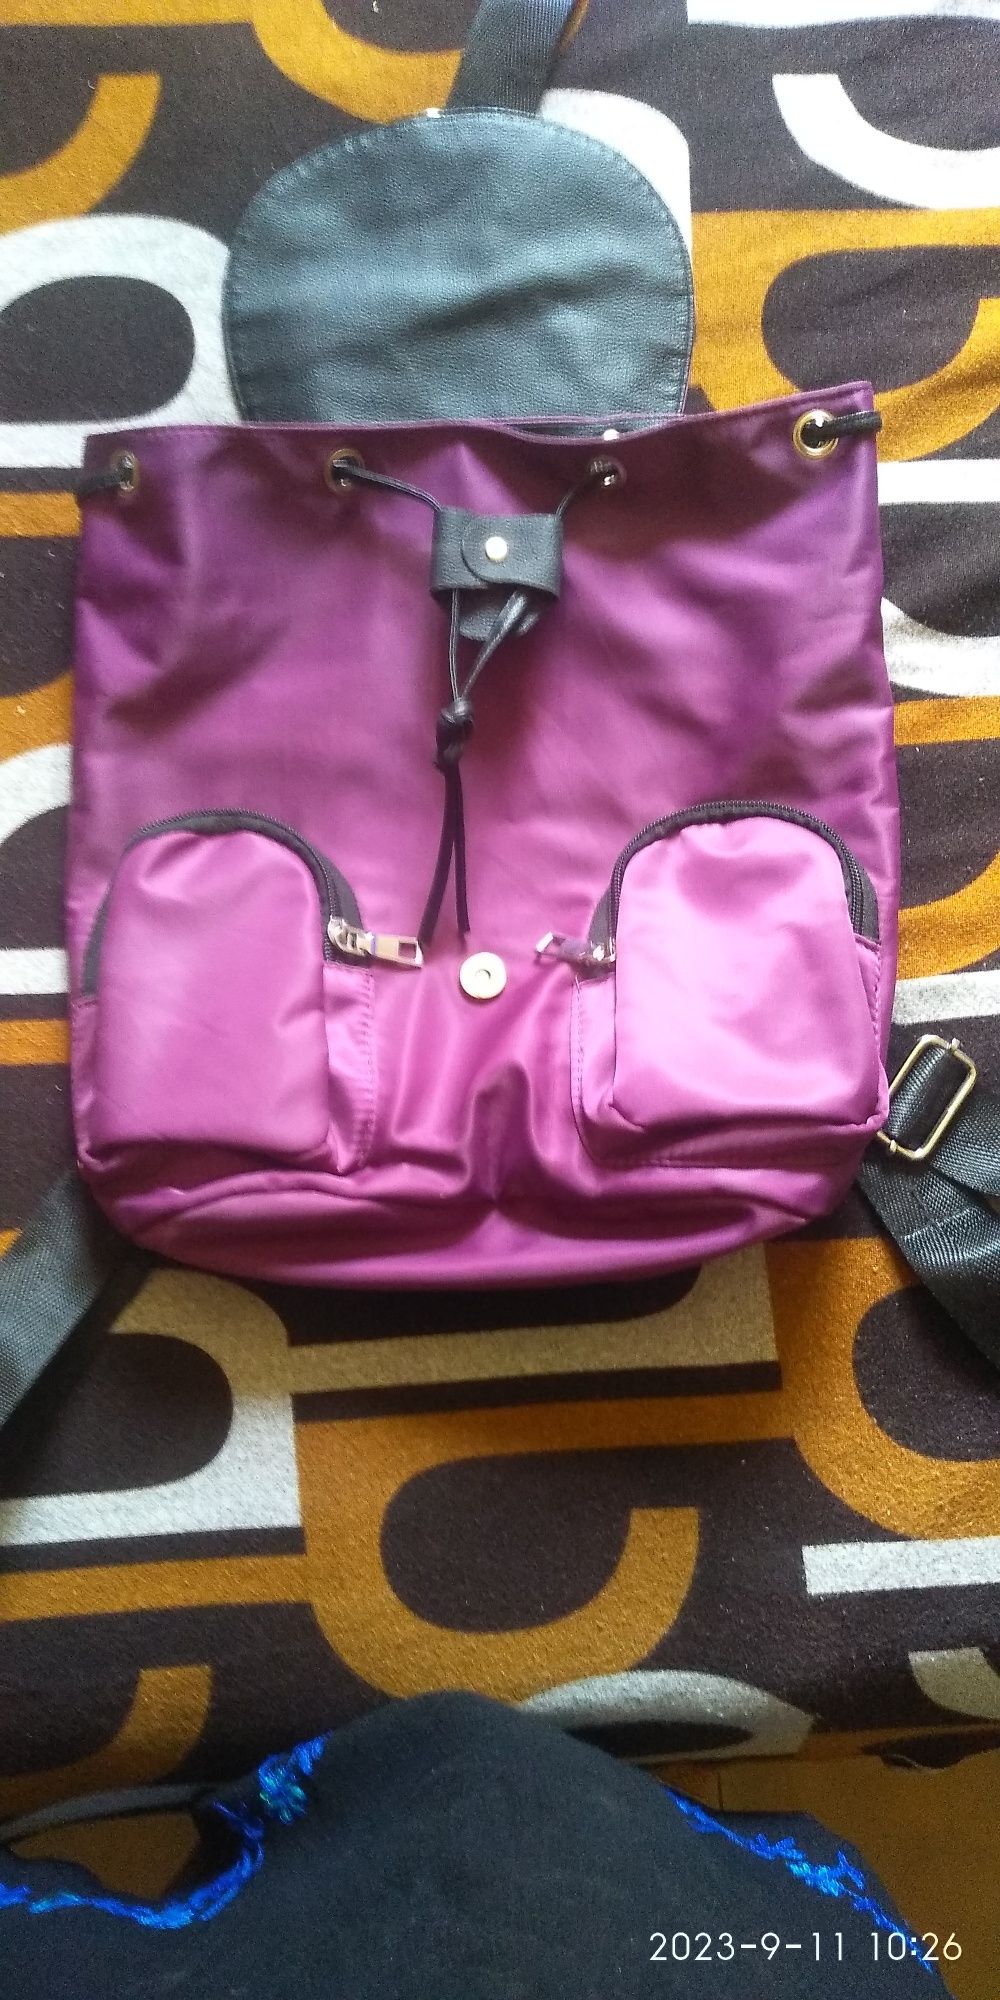 Рюкзак новый, цвета бордо